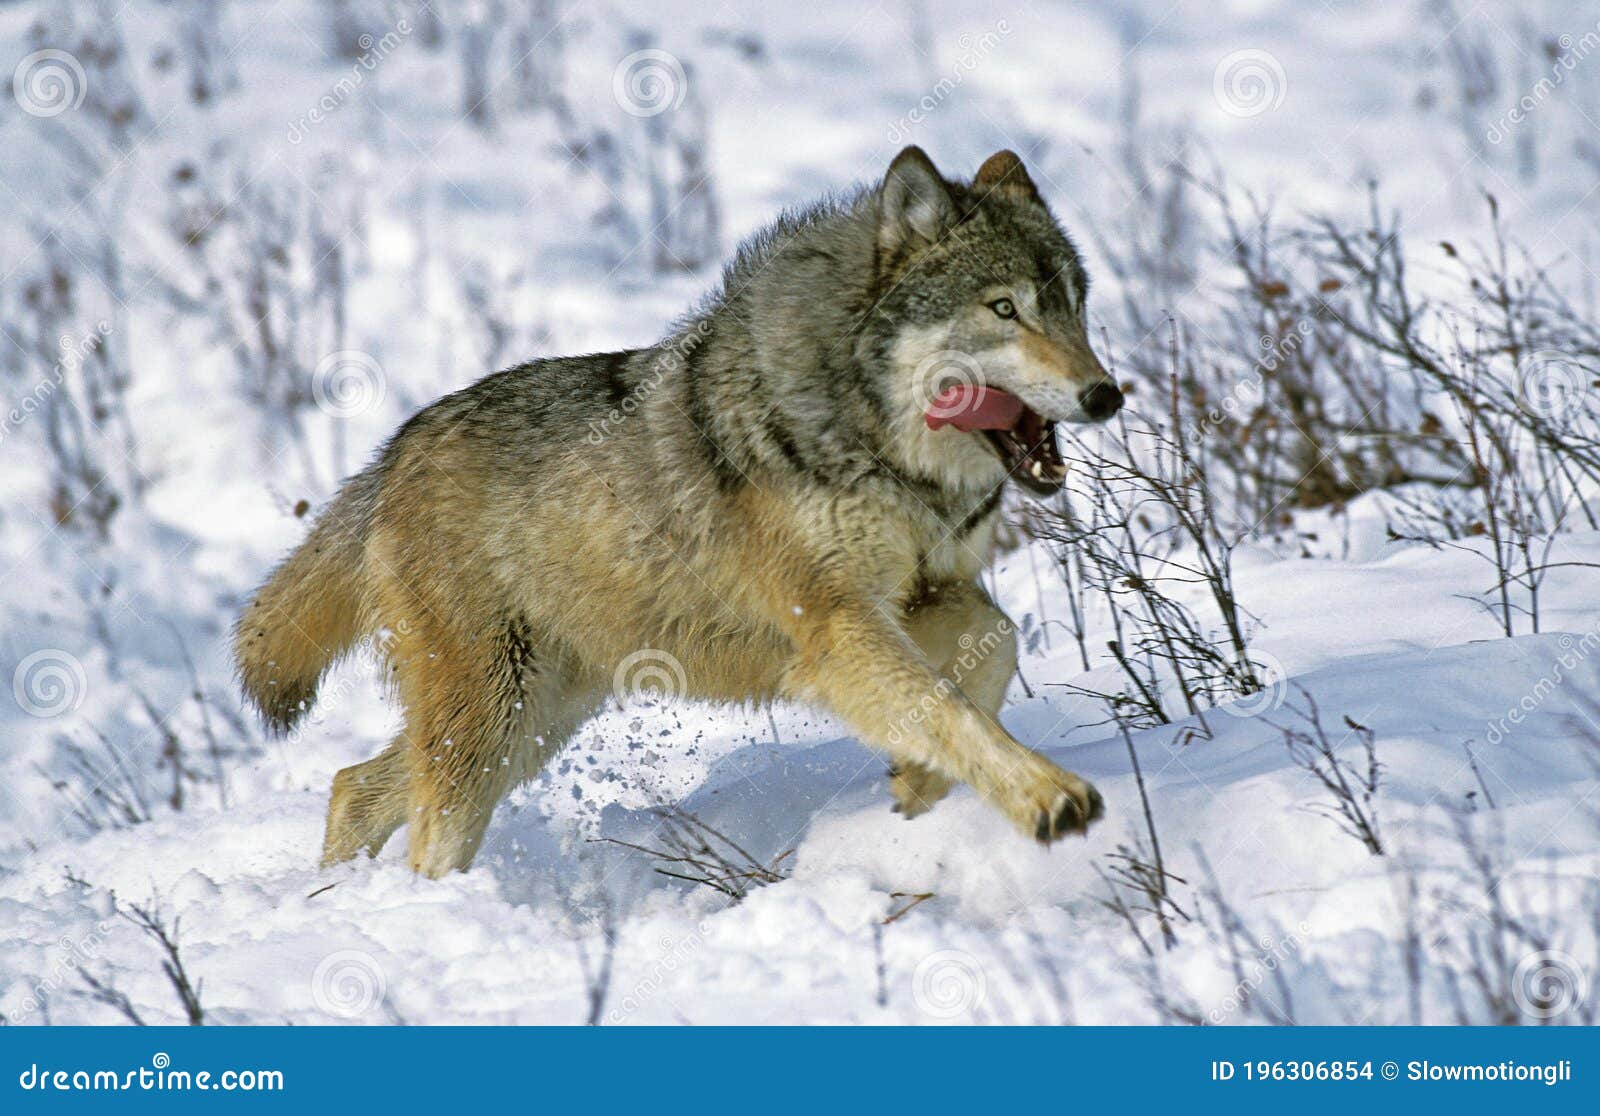 Saarloos猎狼犬美丽的母狗在冬天公园 库存图片. 图片 包括有 没人, 哺乳动物, 纵向, 食肉动物 - 109874997